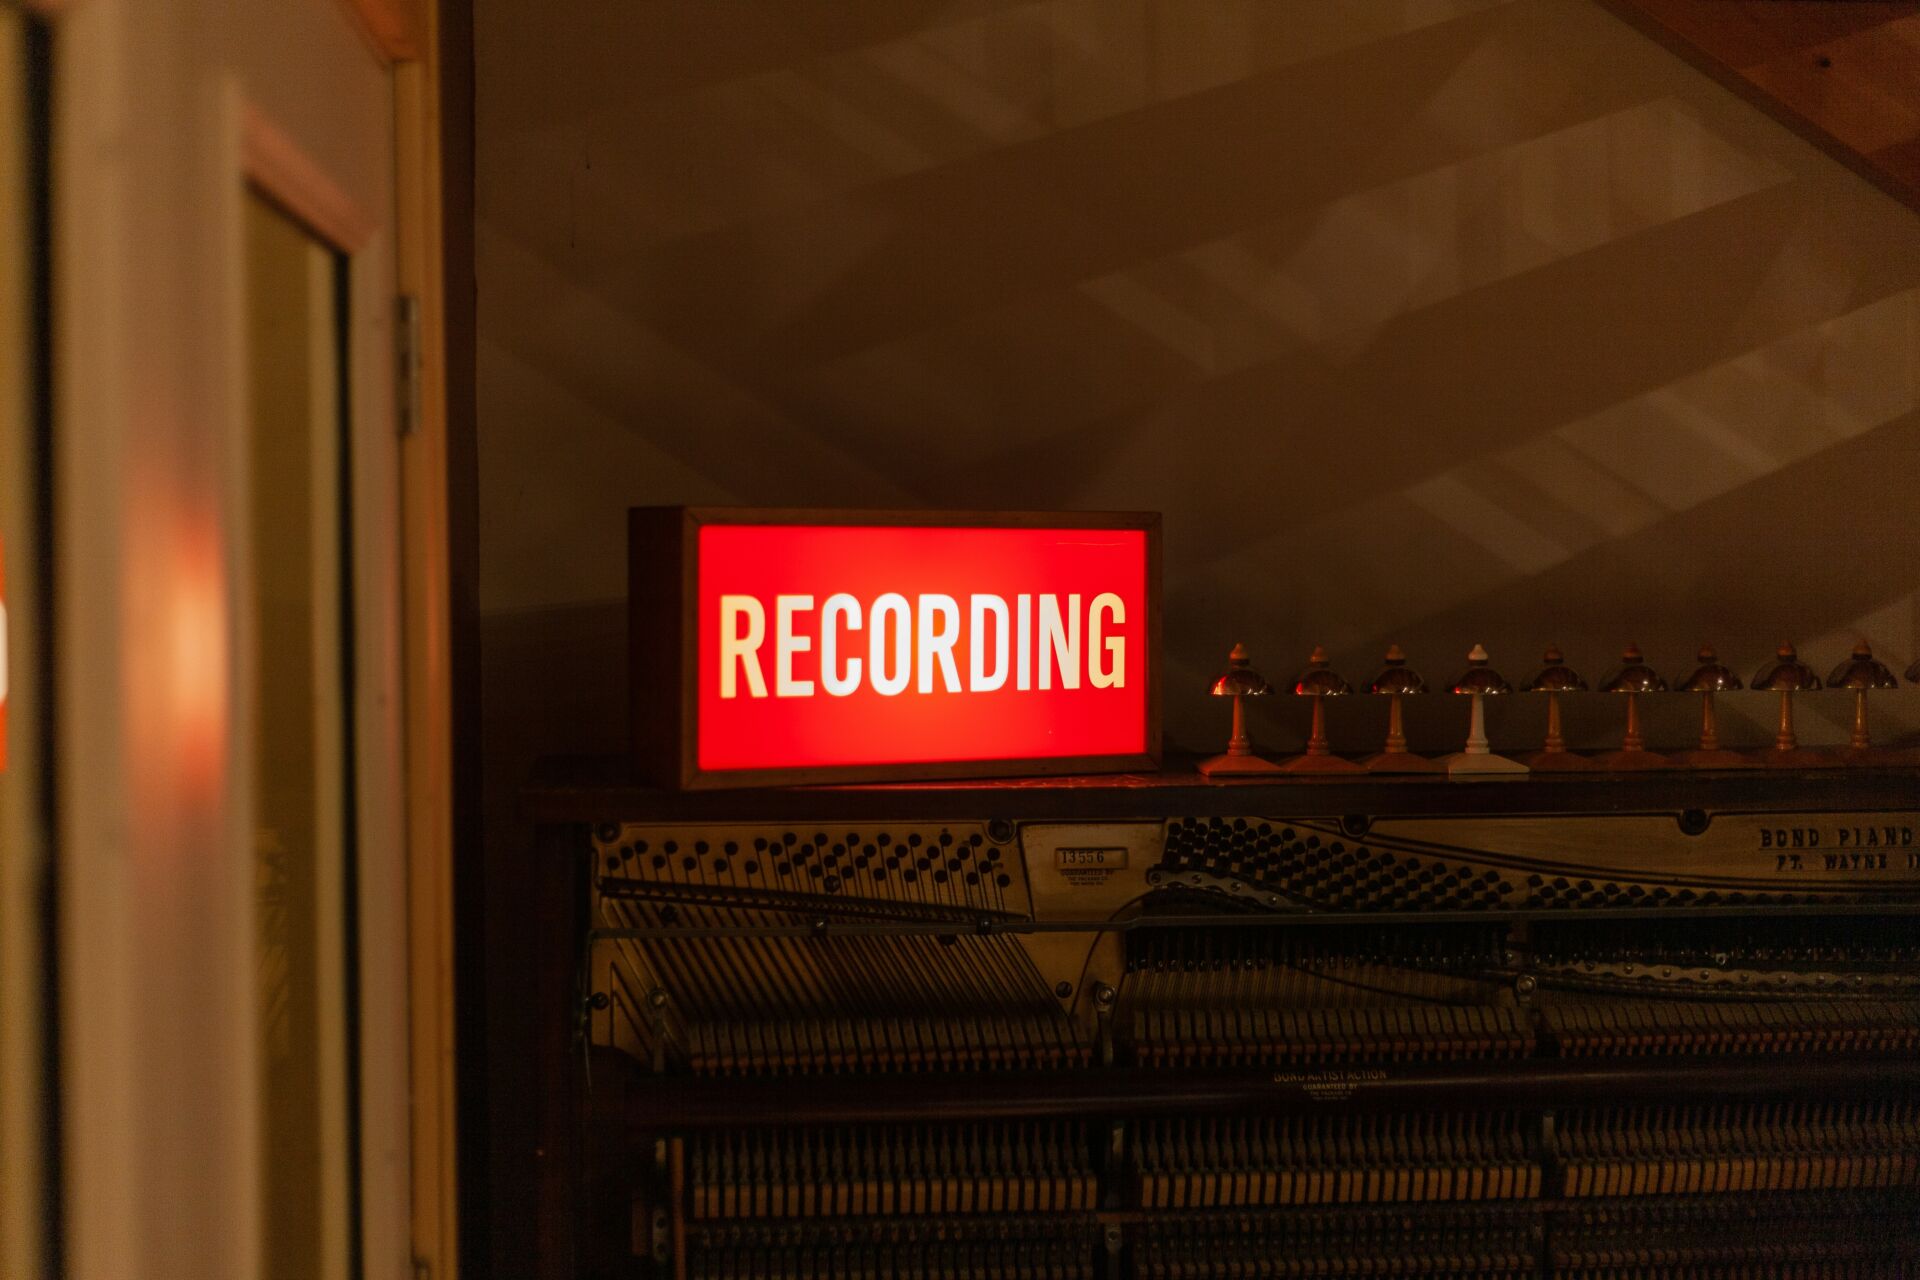 recordingのランプがついている看板の画像